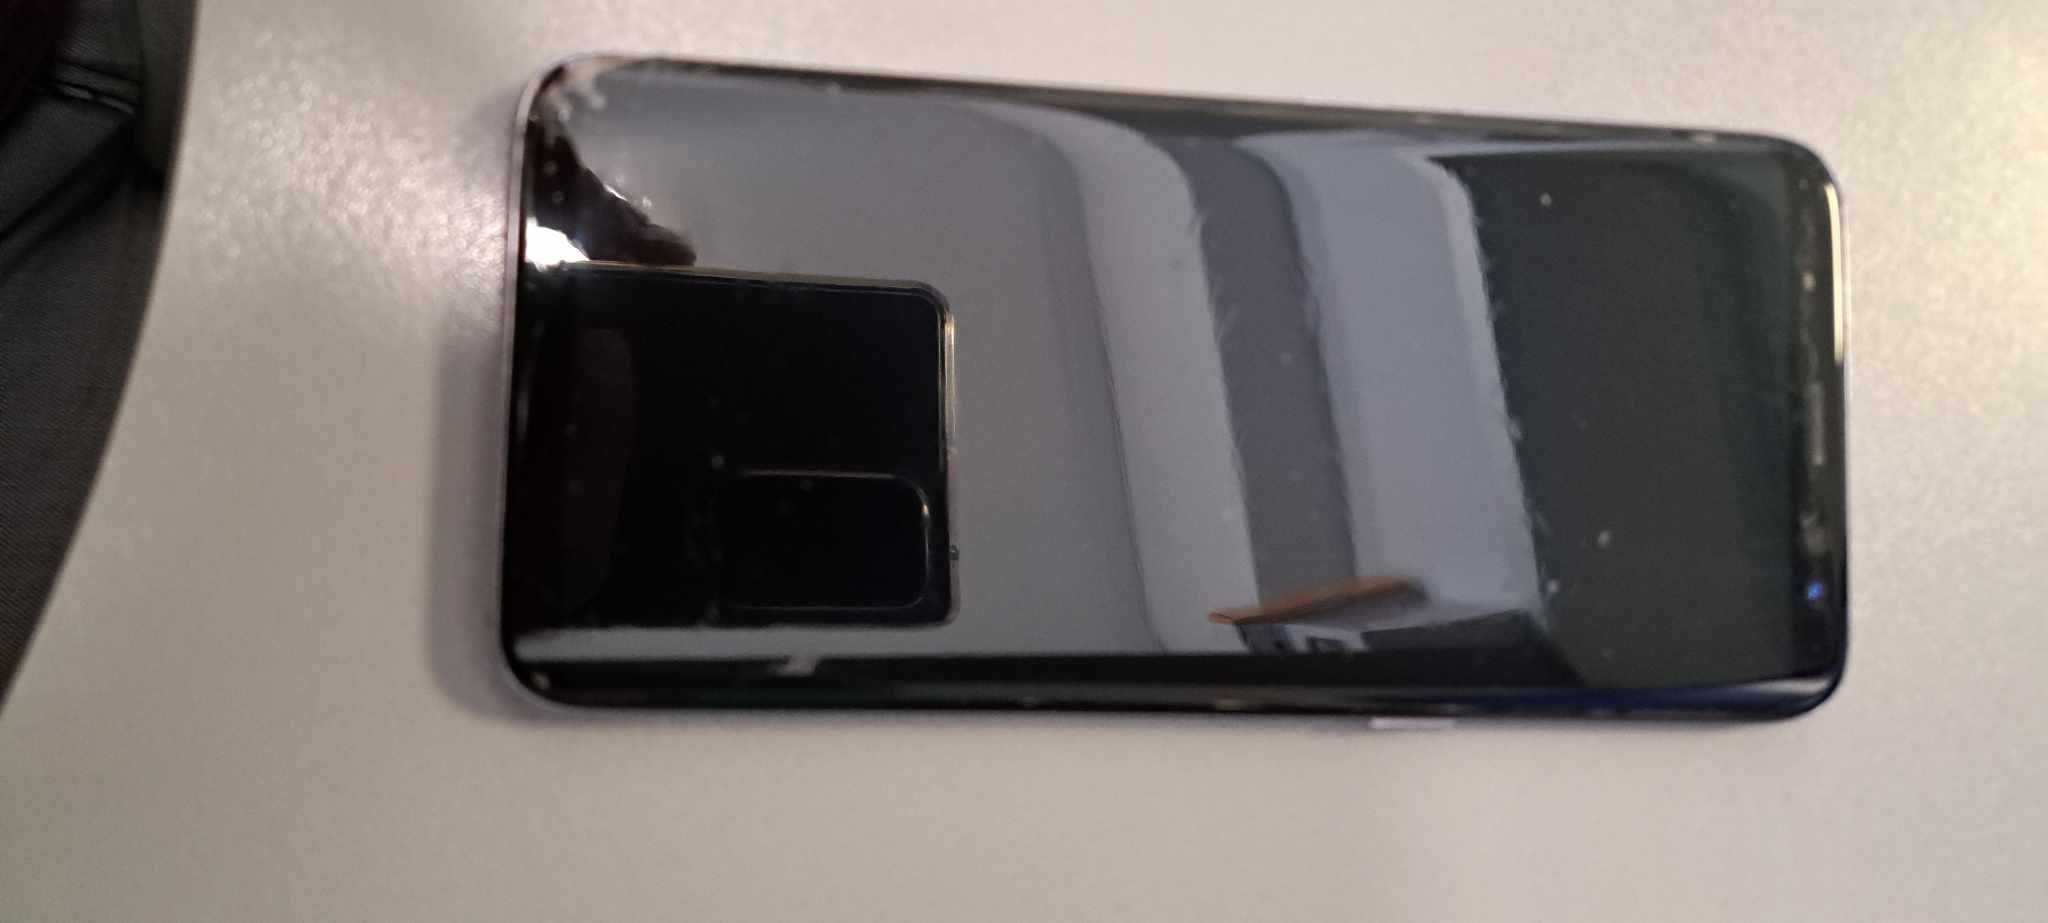 Samsung Galaxy S8 uszkodzony